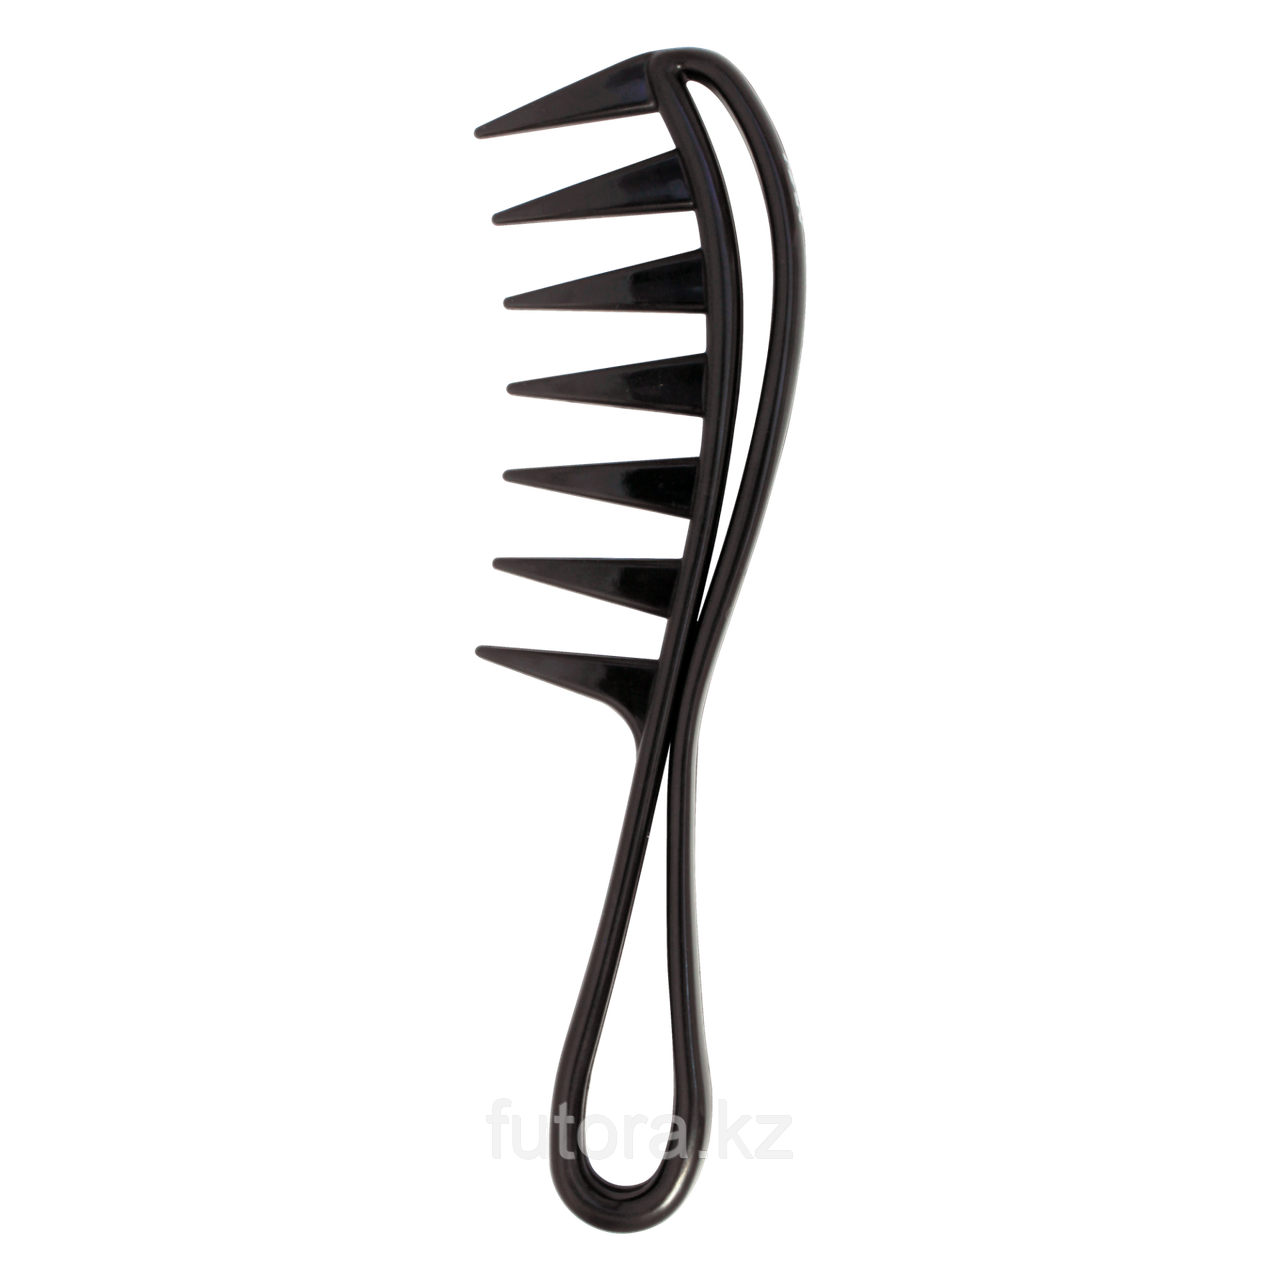 Расческа "Nishman Hair Comb - 043" с ручкой, для текстурирующей укладки волос.